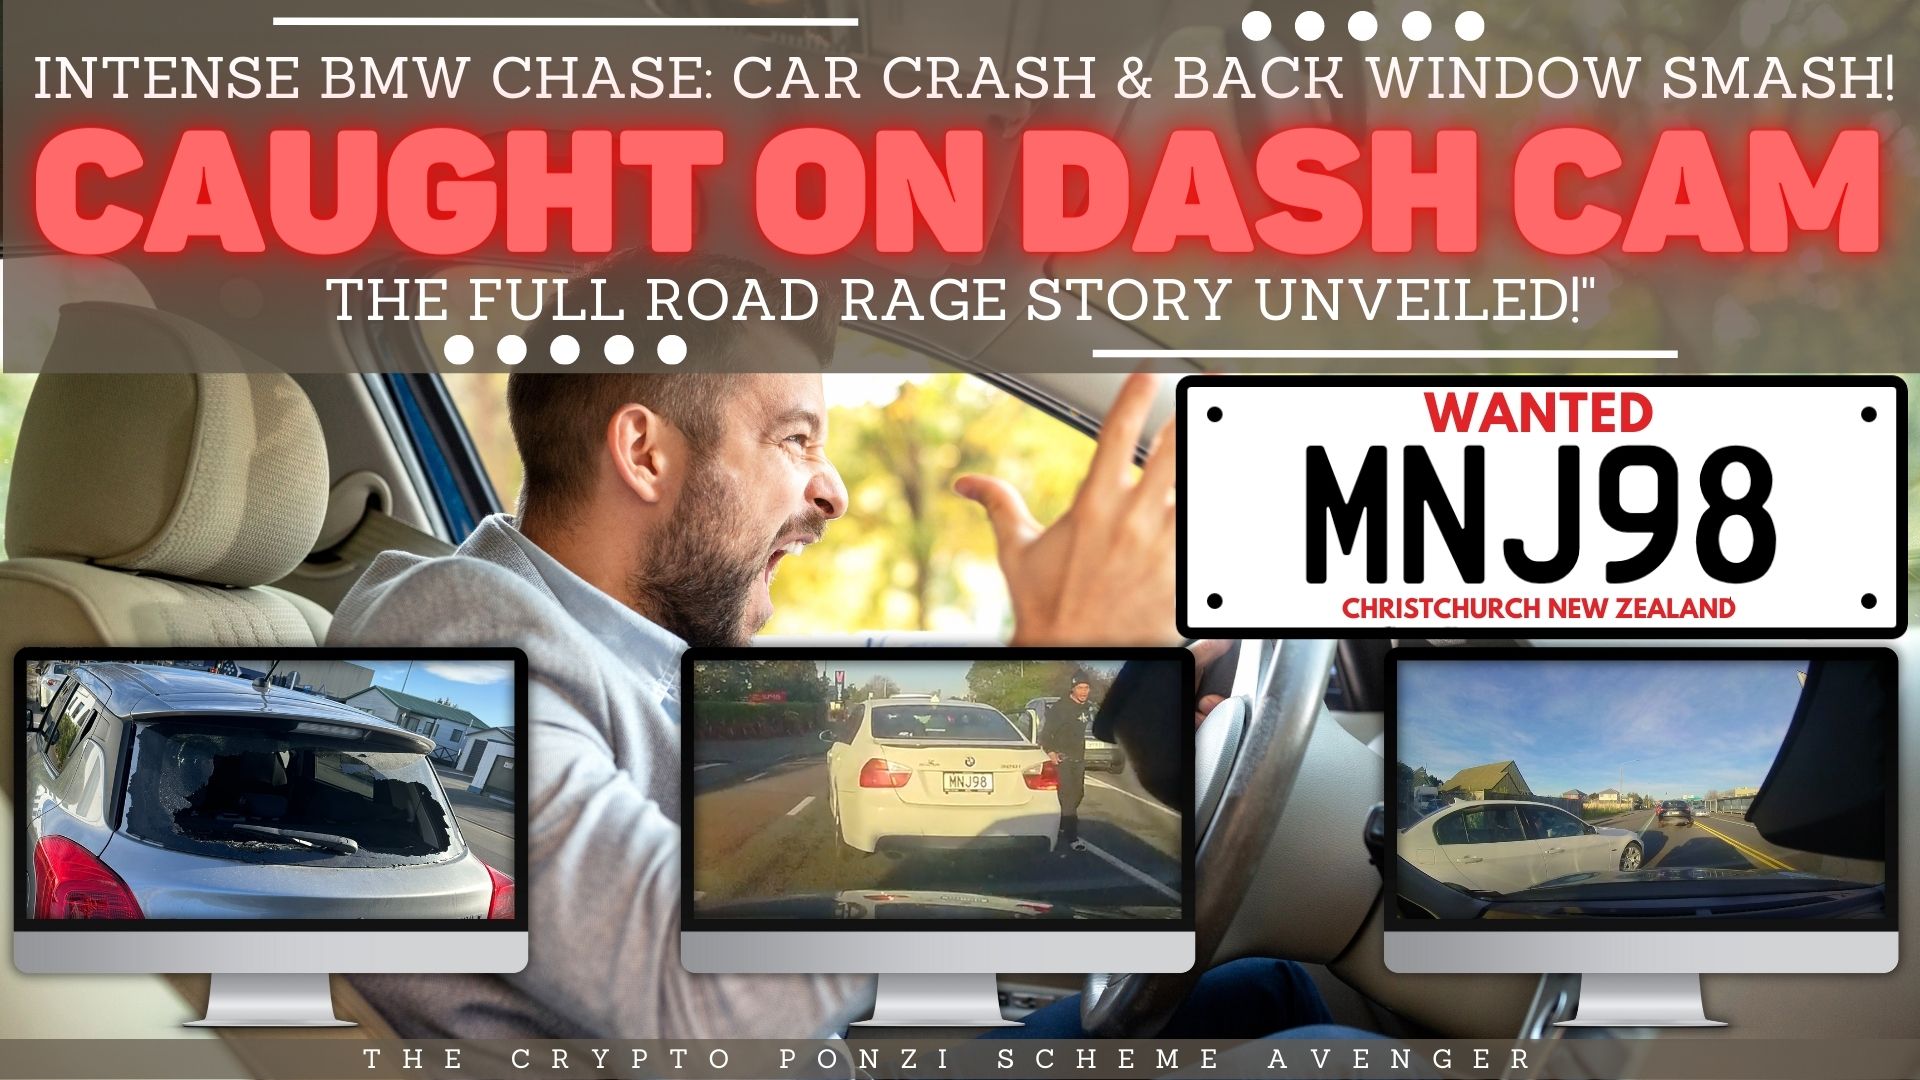 Intense Road Rage Incident BMW Crash & Back Window Smashed! Dash Cam Captures Shocking Confrontation